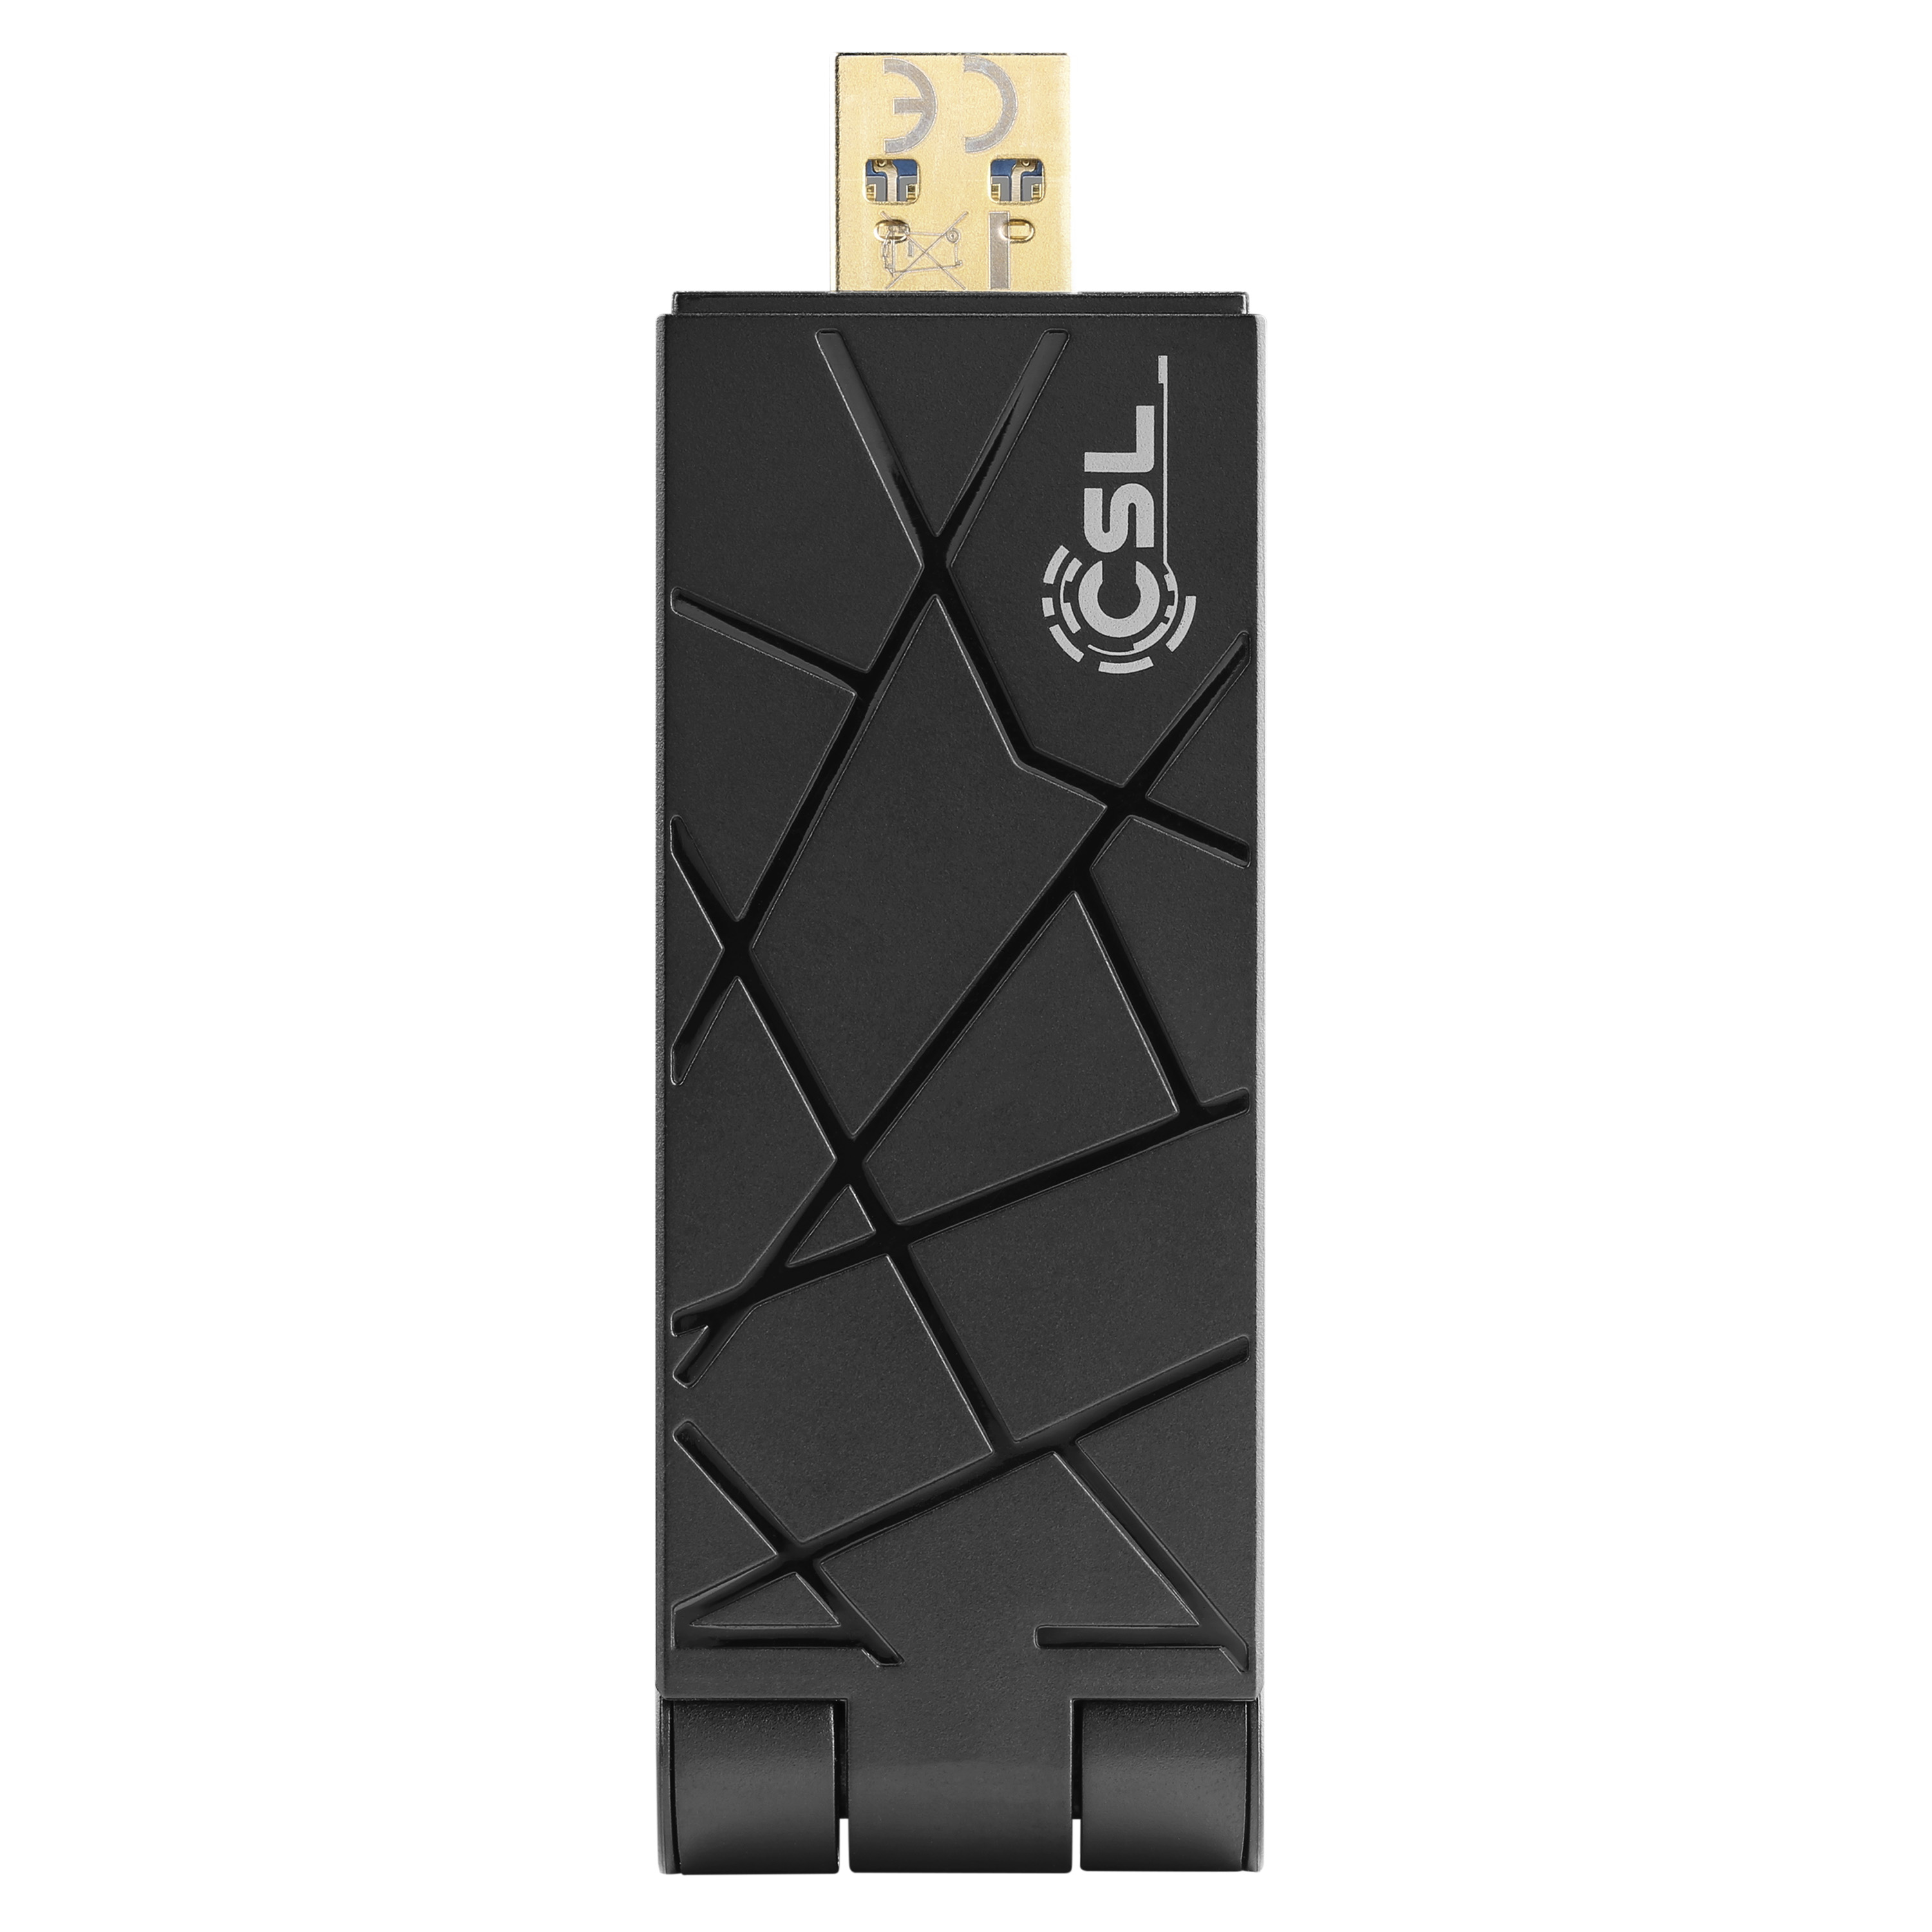 Adapter CSL WLAN USB AX1800